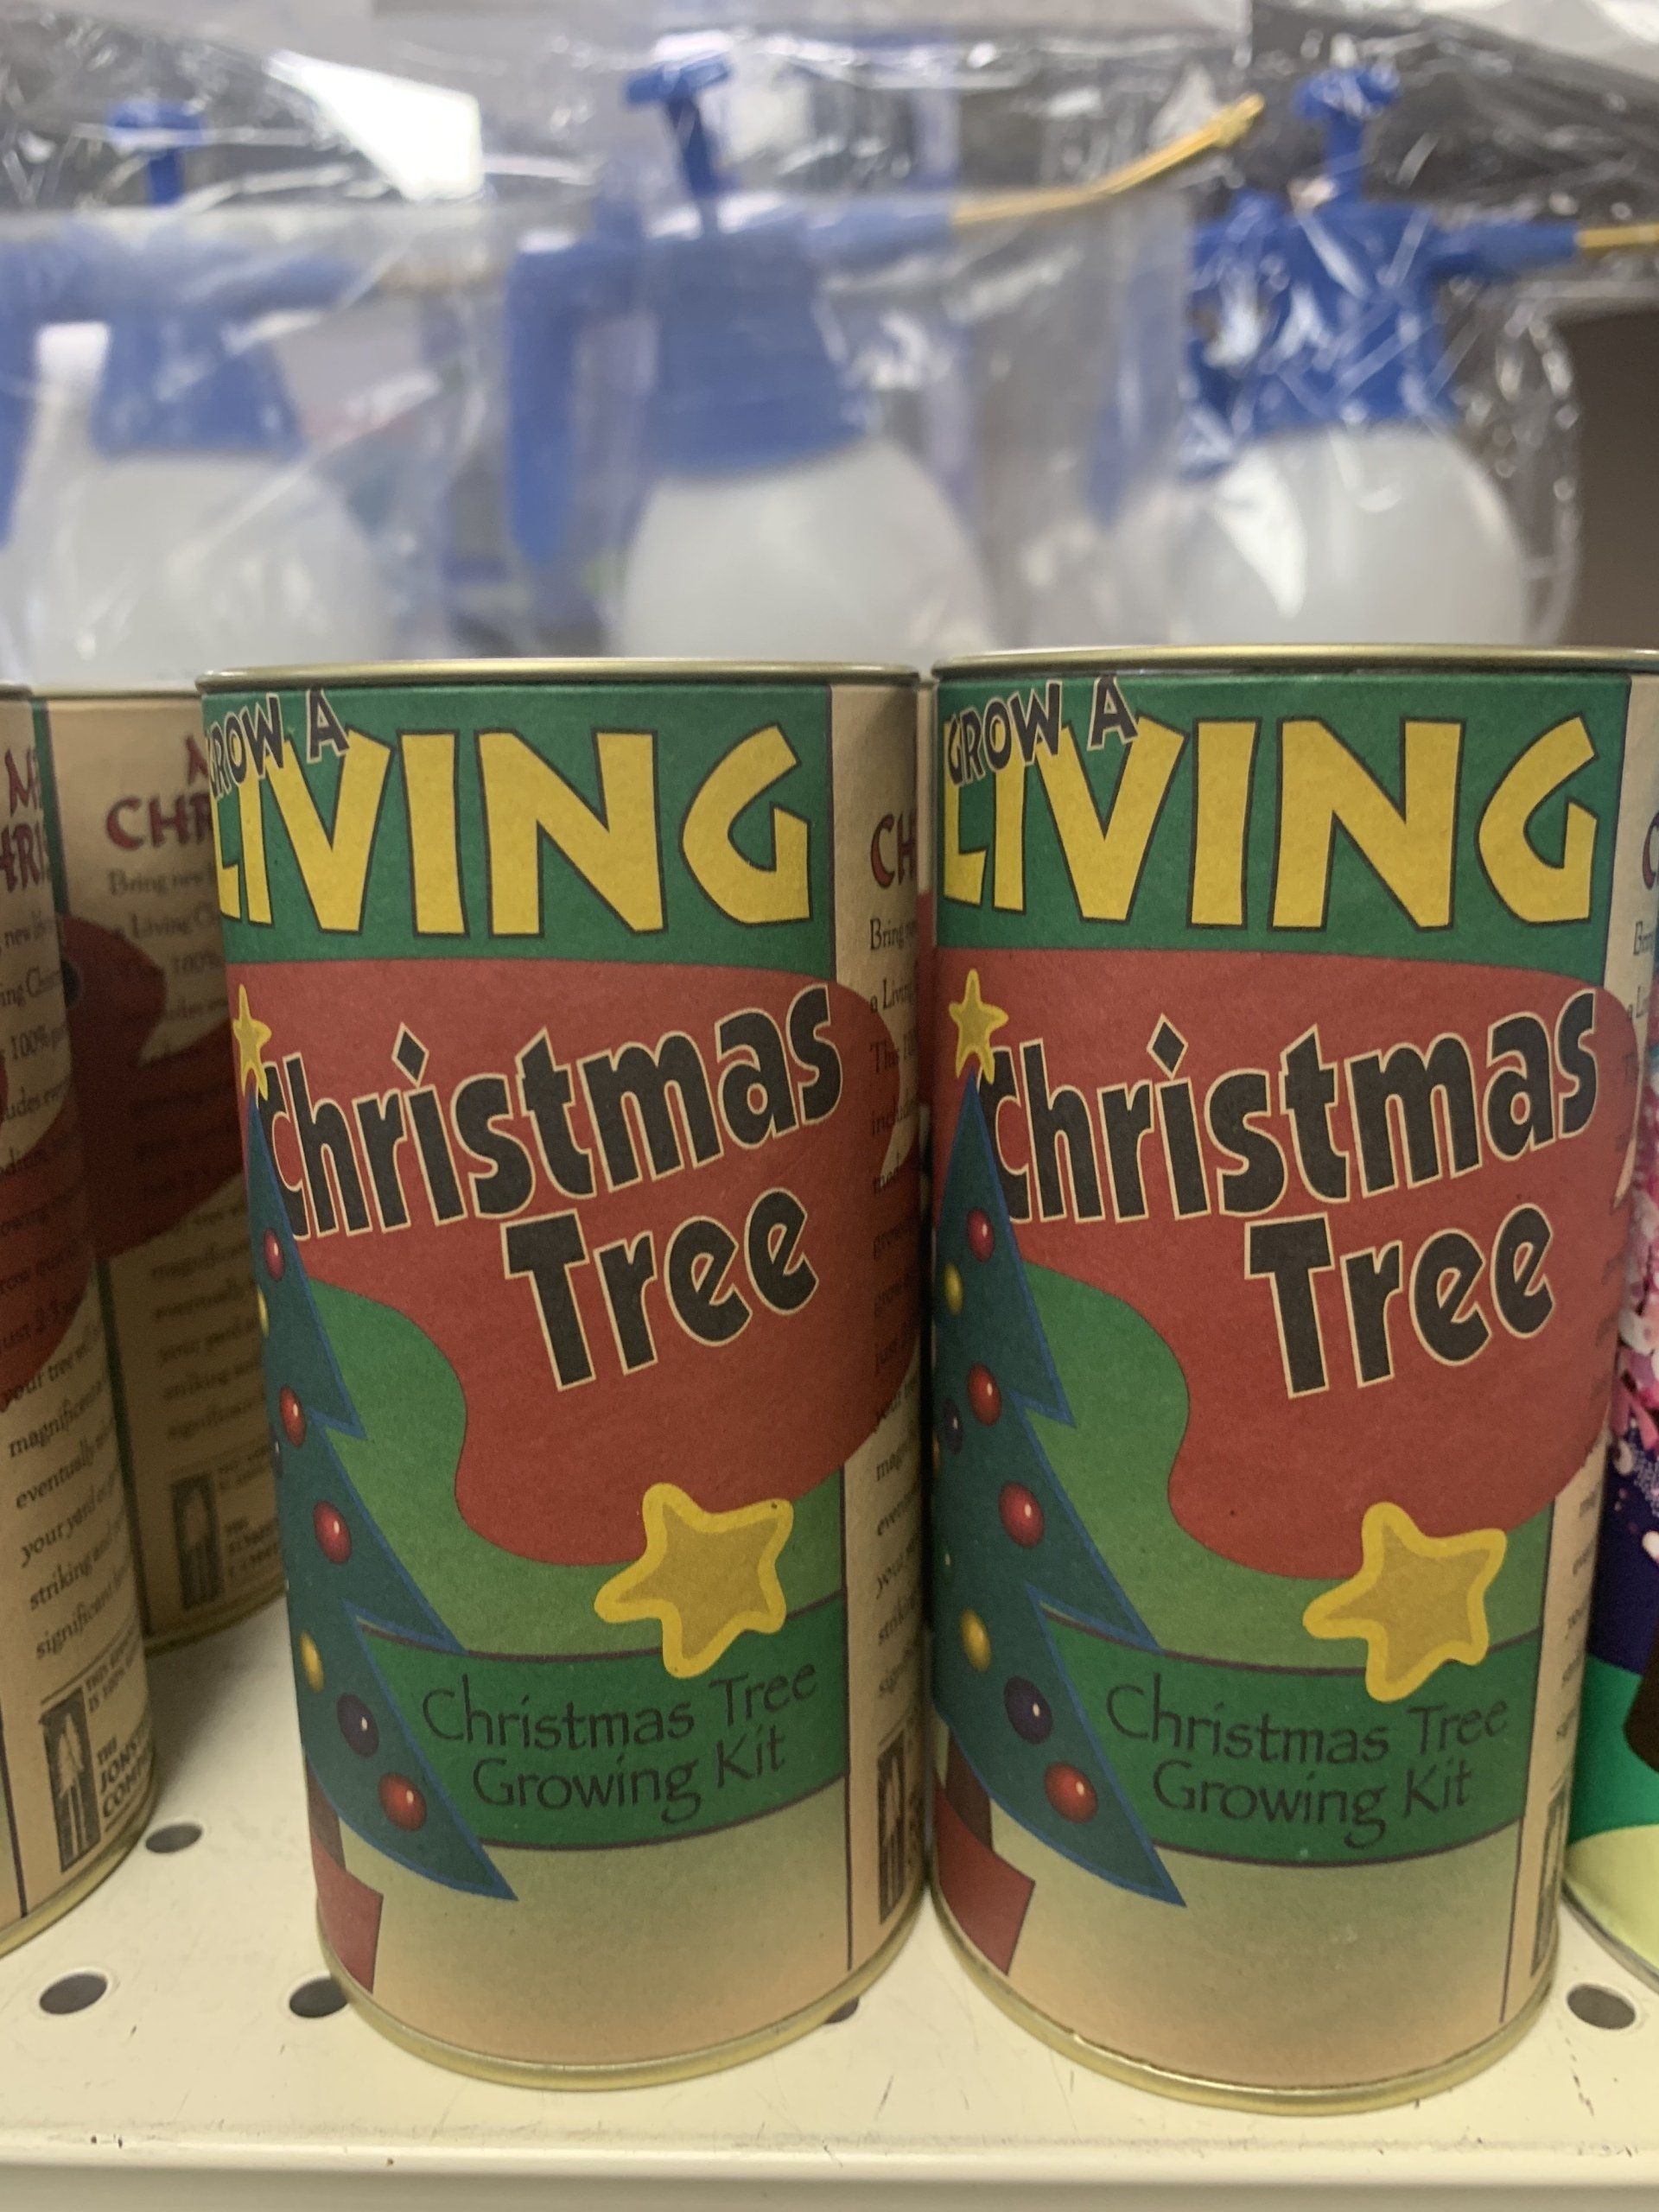 GrowaLiving Christmas Tree - Growing Kit